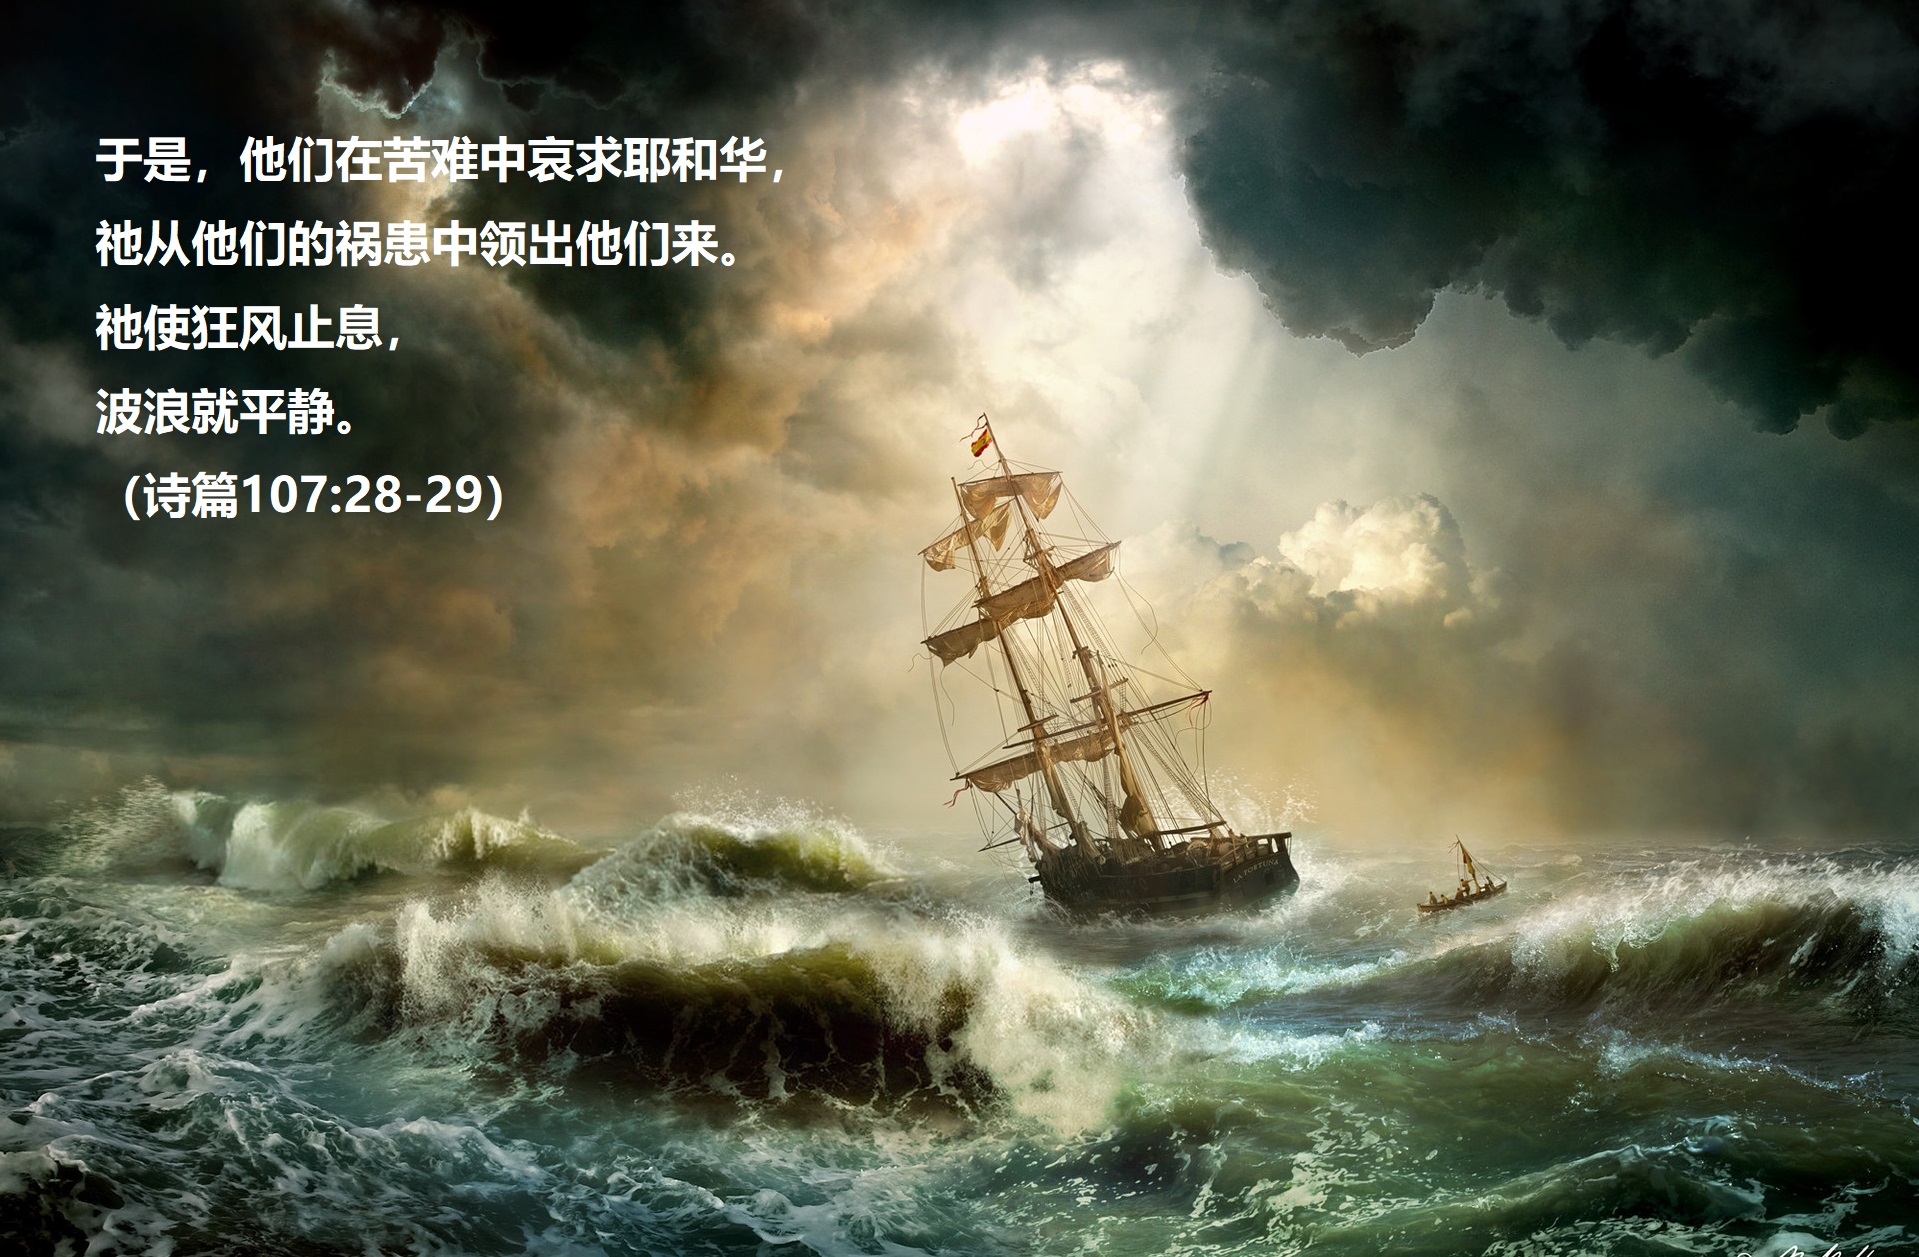 上图：于是，他们在苦难中哀求耶和华，祂从他们的祸患中领出他们来。祂使狂风止息，波浪就平静。（诗篇107:28-29）